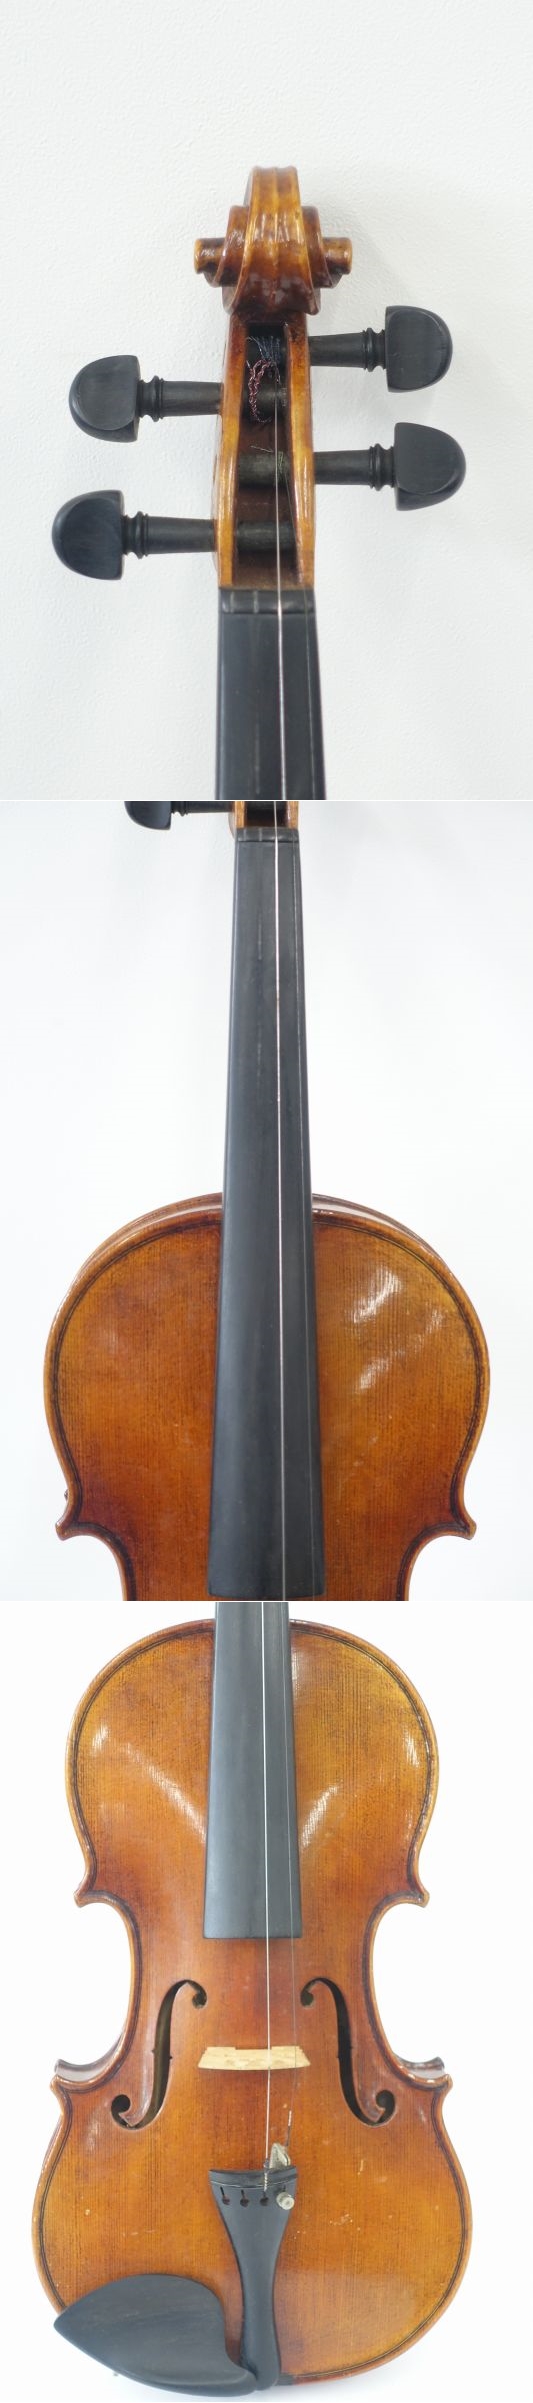 バイオリン ドイツ製 WILHELM HAMMIG SAMPO 4/4 - 弦楽器